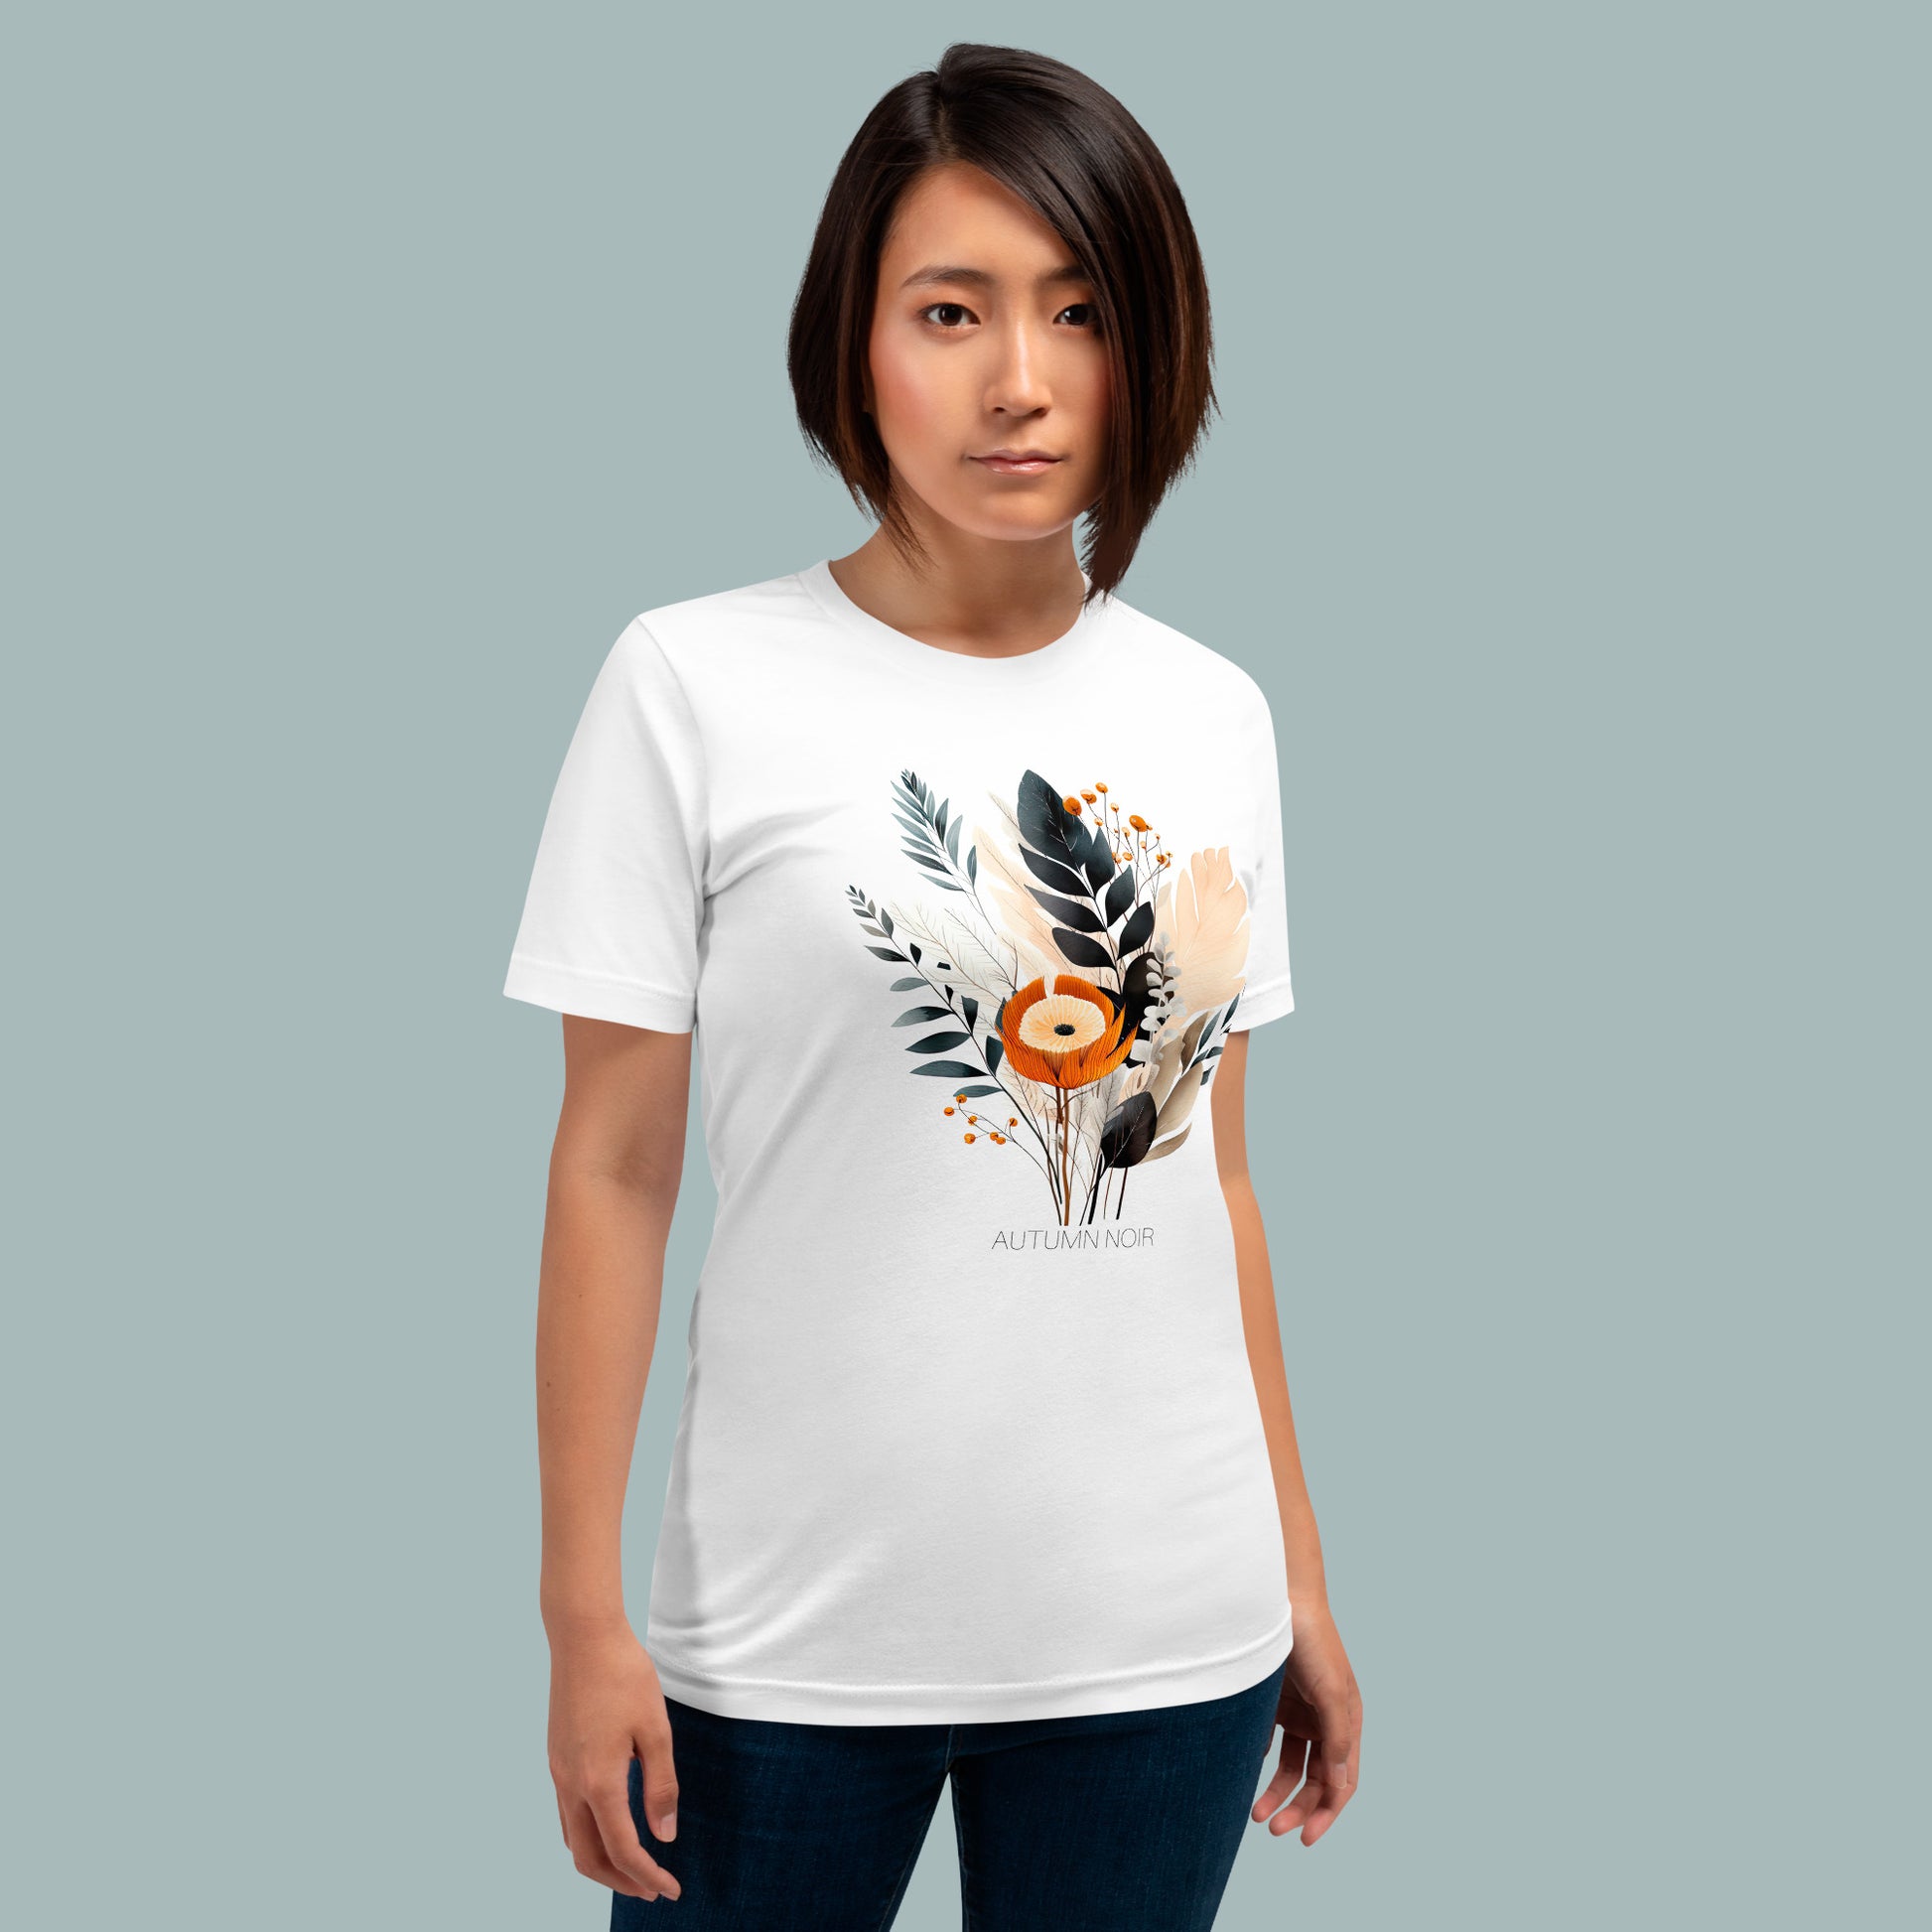 Autumn Noir Unisex T-shirt in White on Female Model